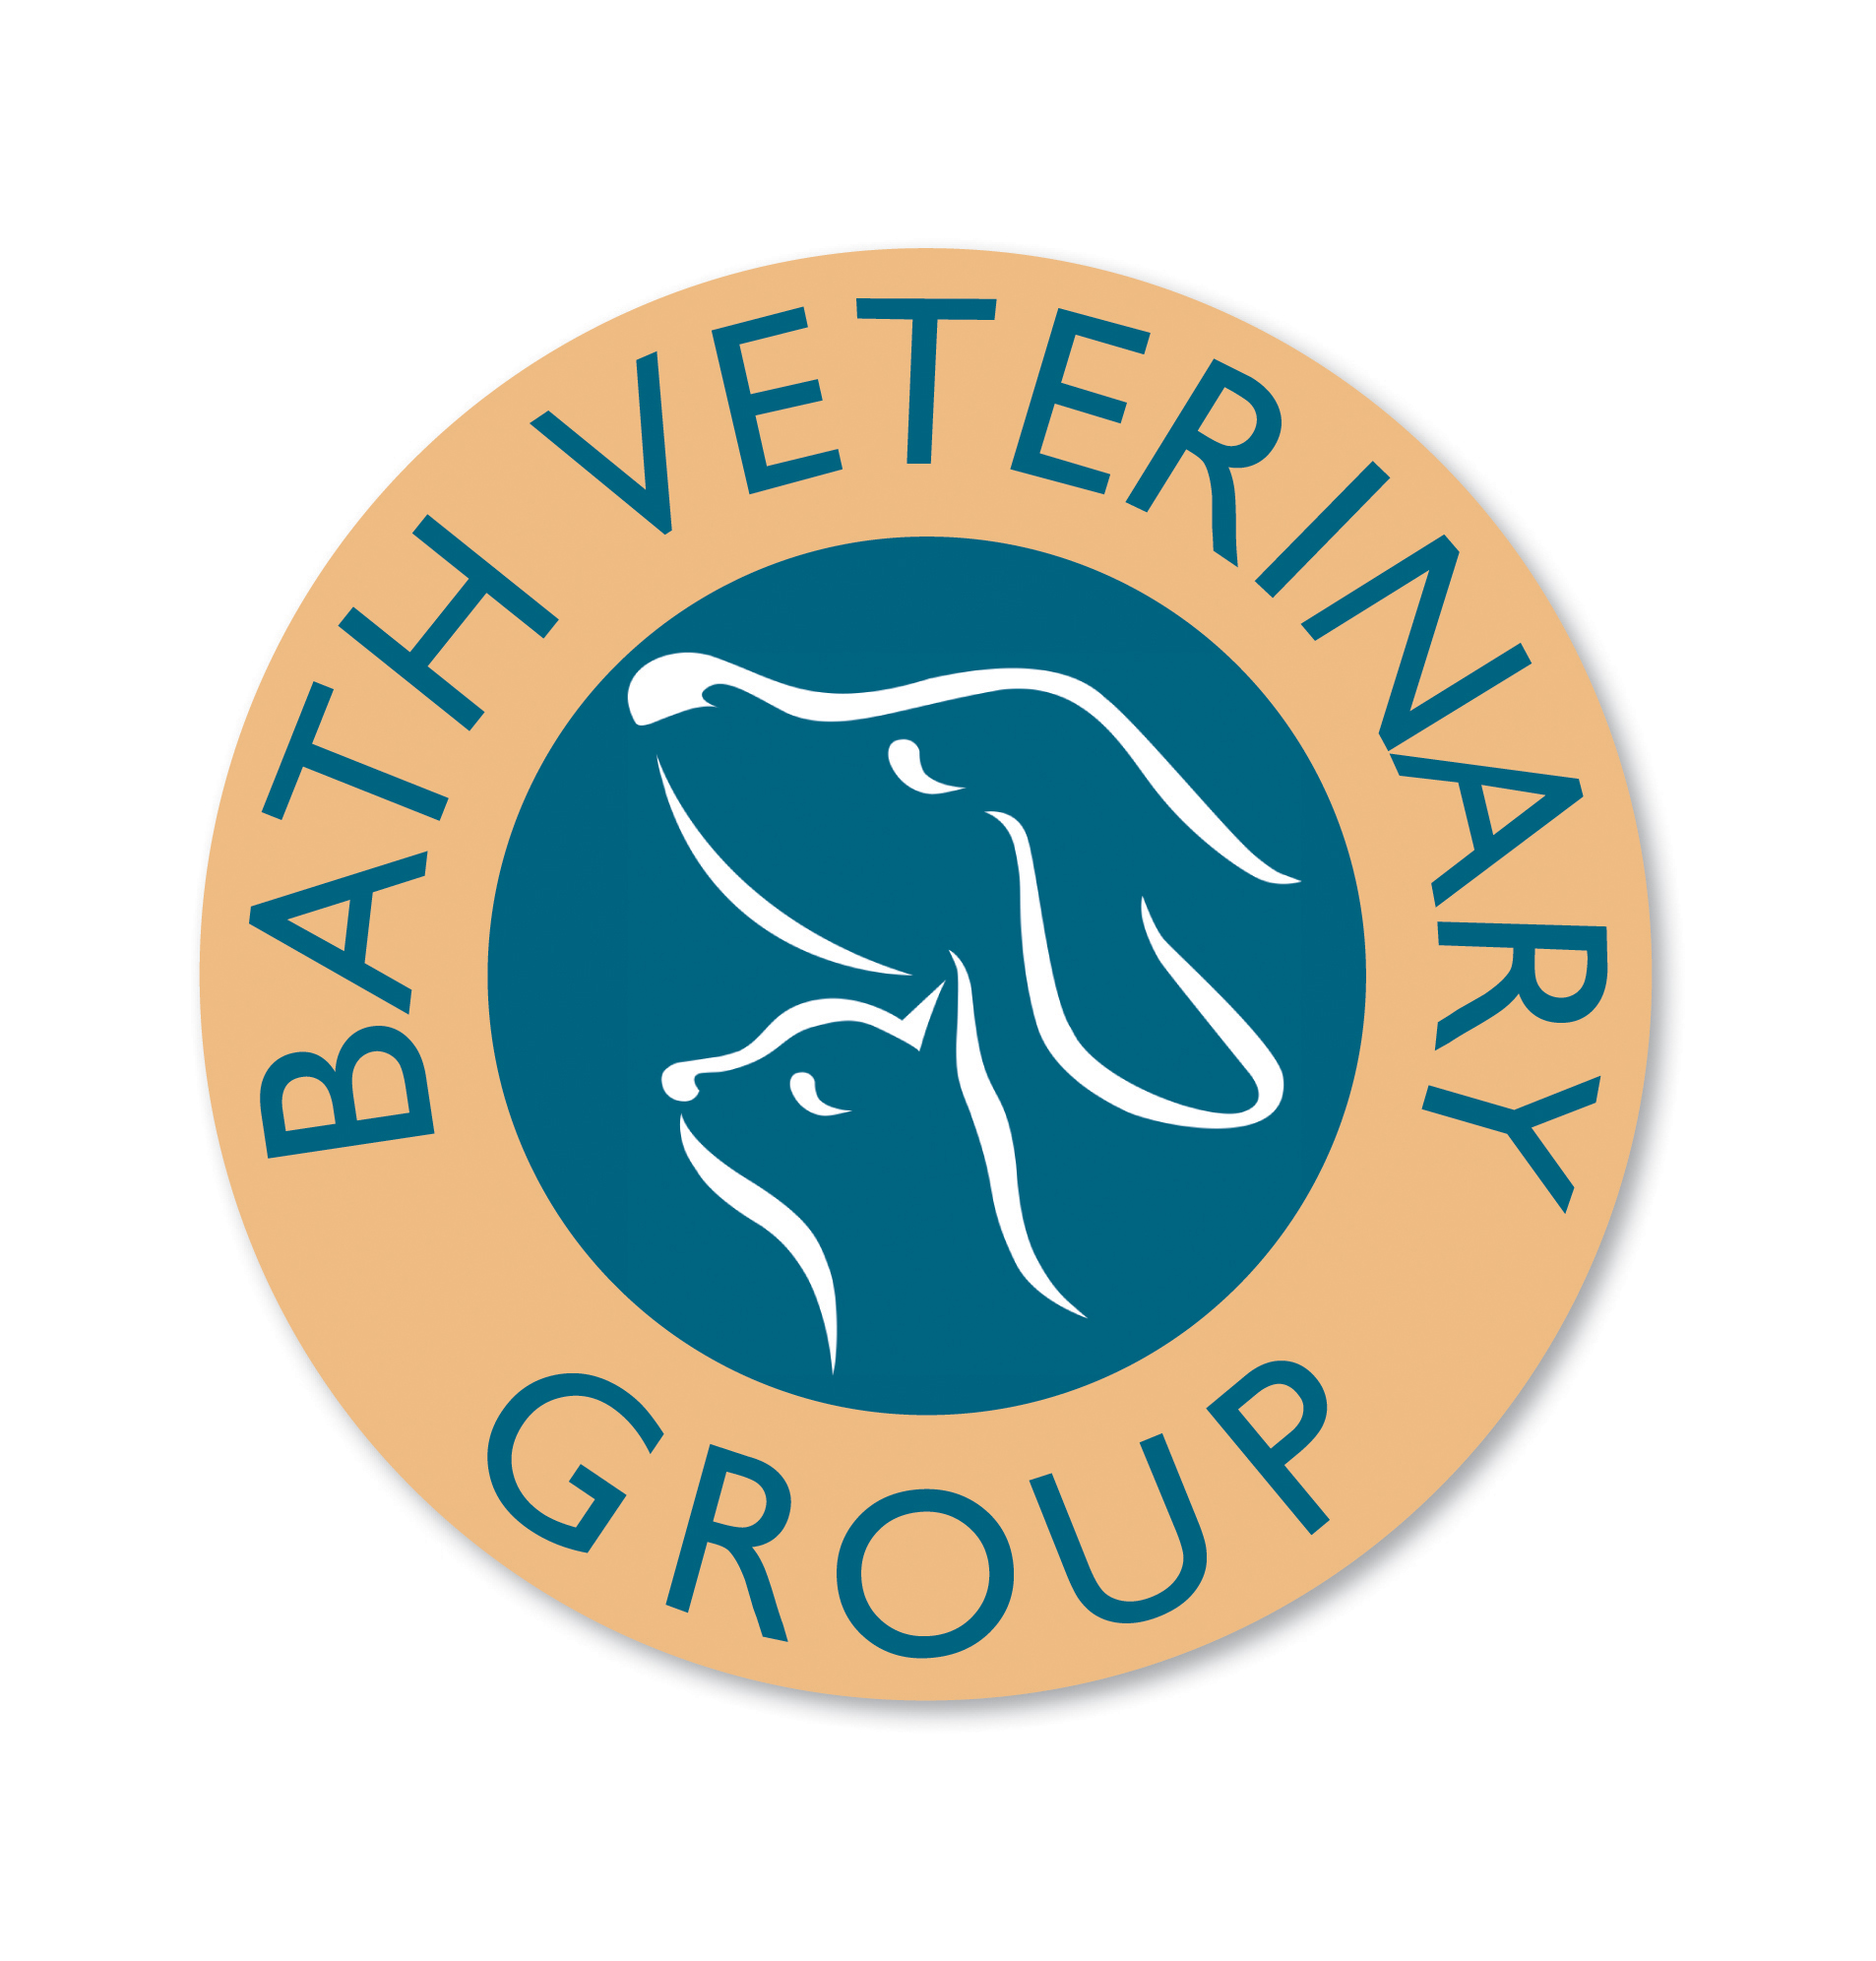 Bath Veterinary Group - Rosemary Lodge Veterinary Hospital